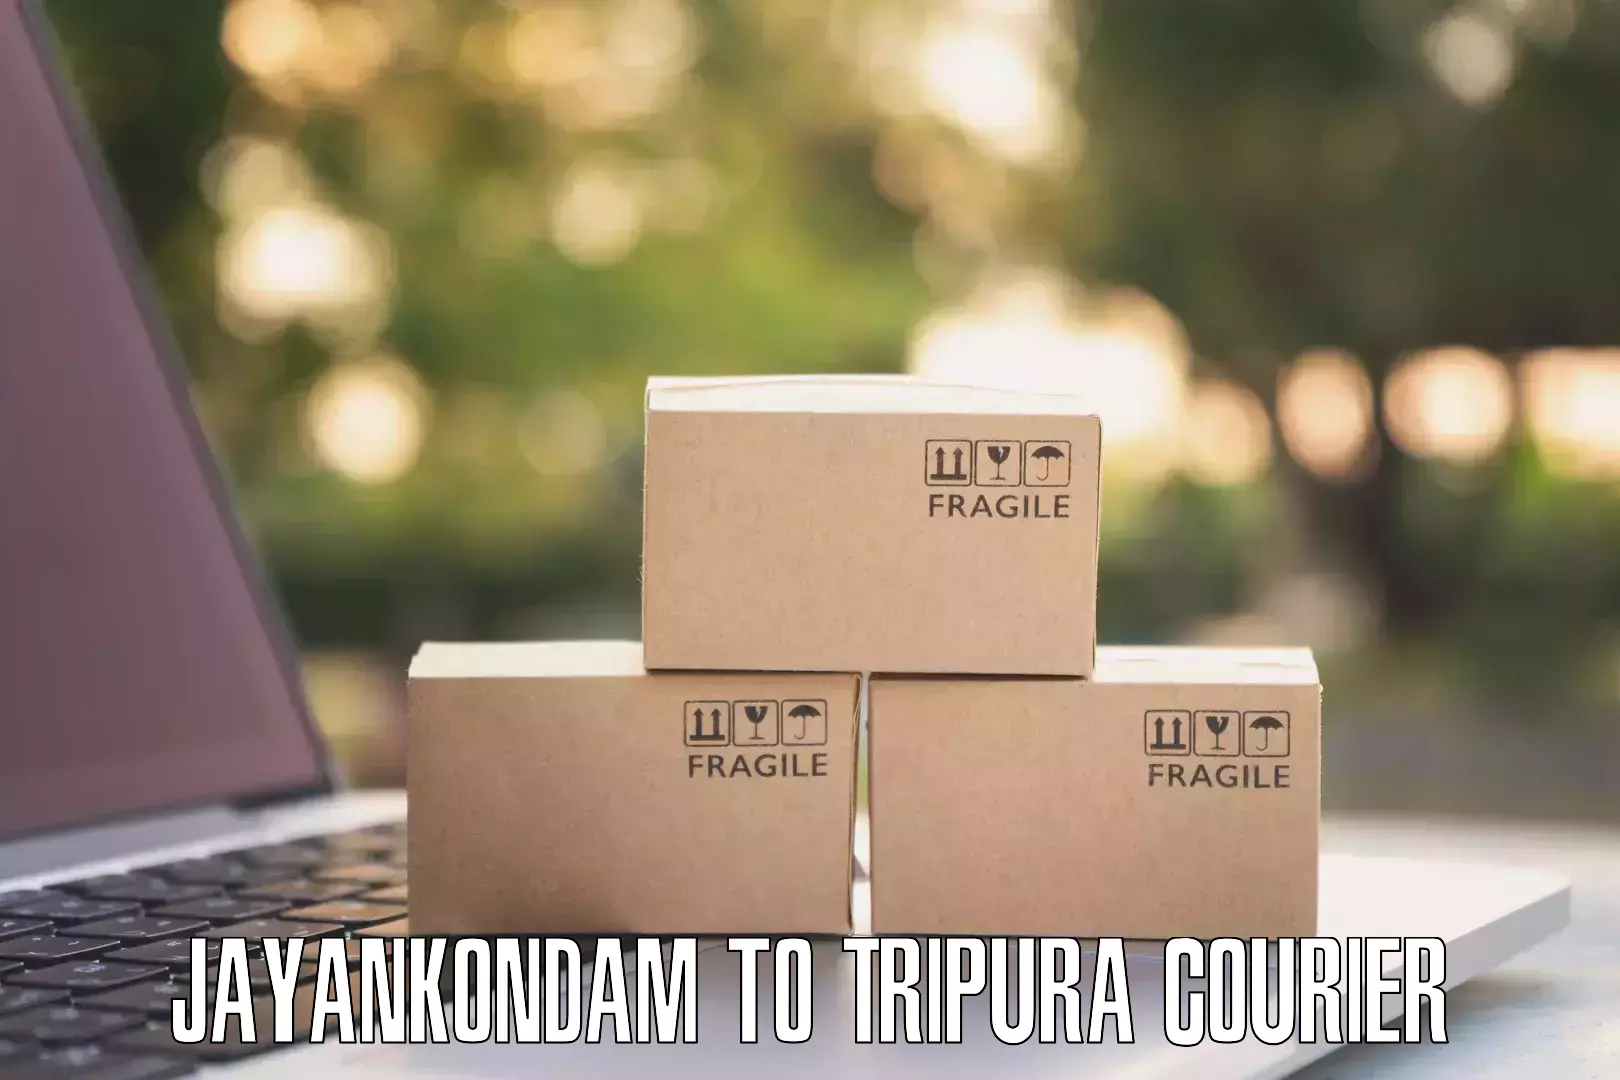 Courier service innovation Jayankondam to Teliamura